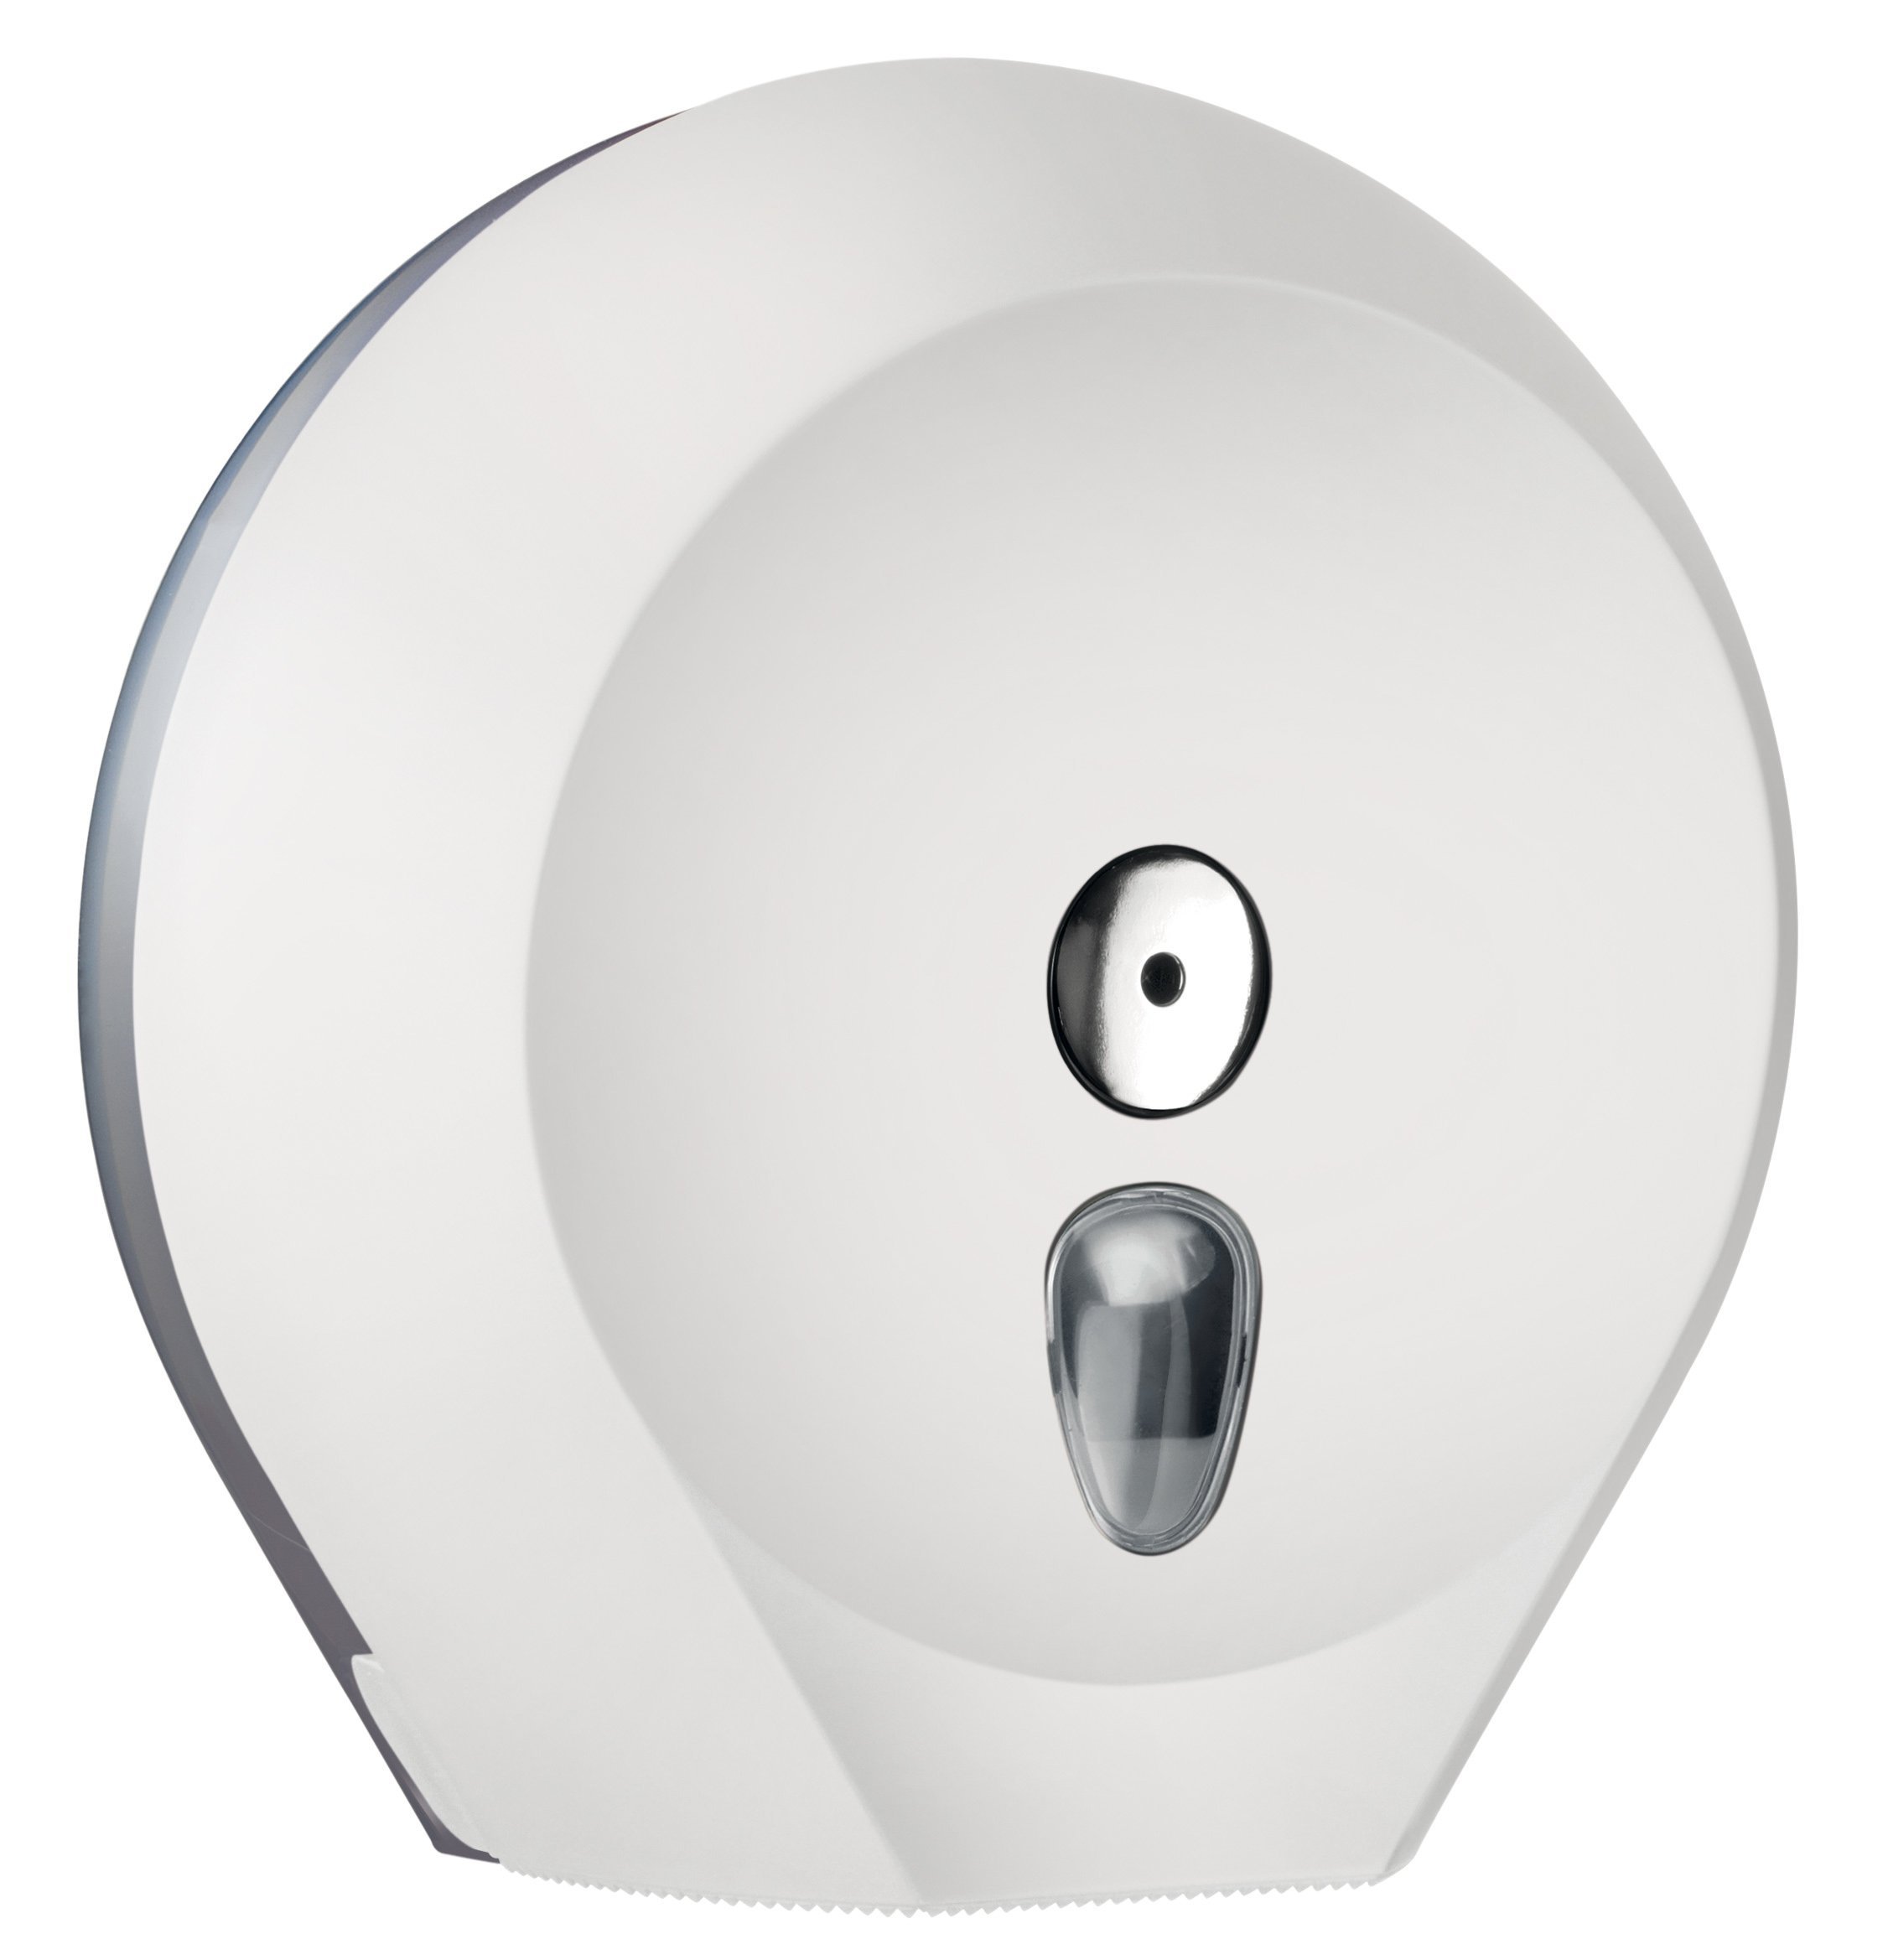 Toilettenpapierspender Weiß - Abschließbar - für Großrolle Ø 29 cm